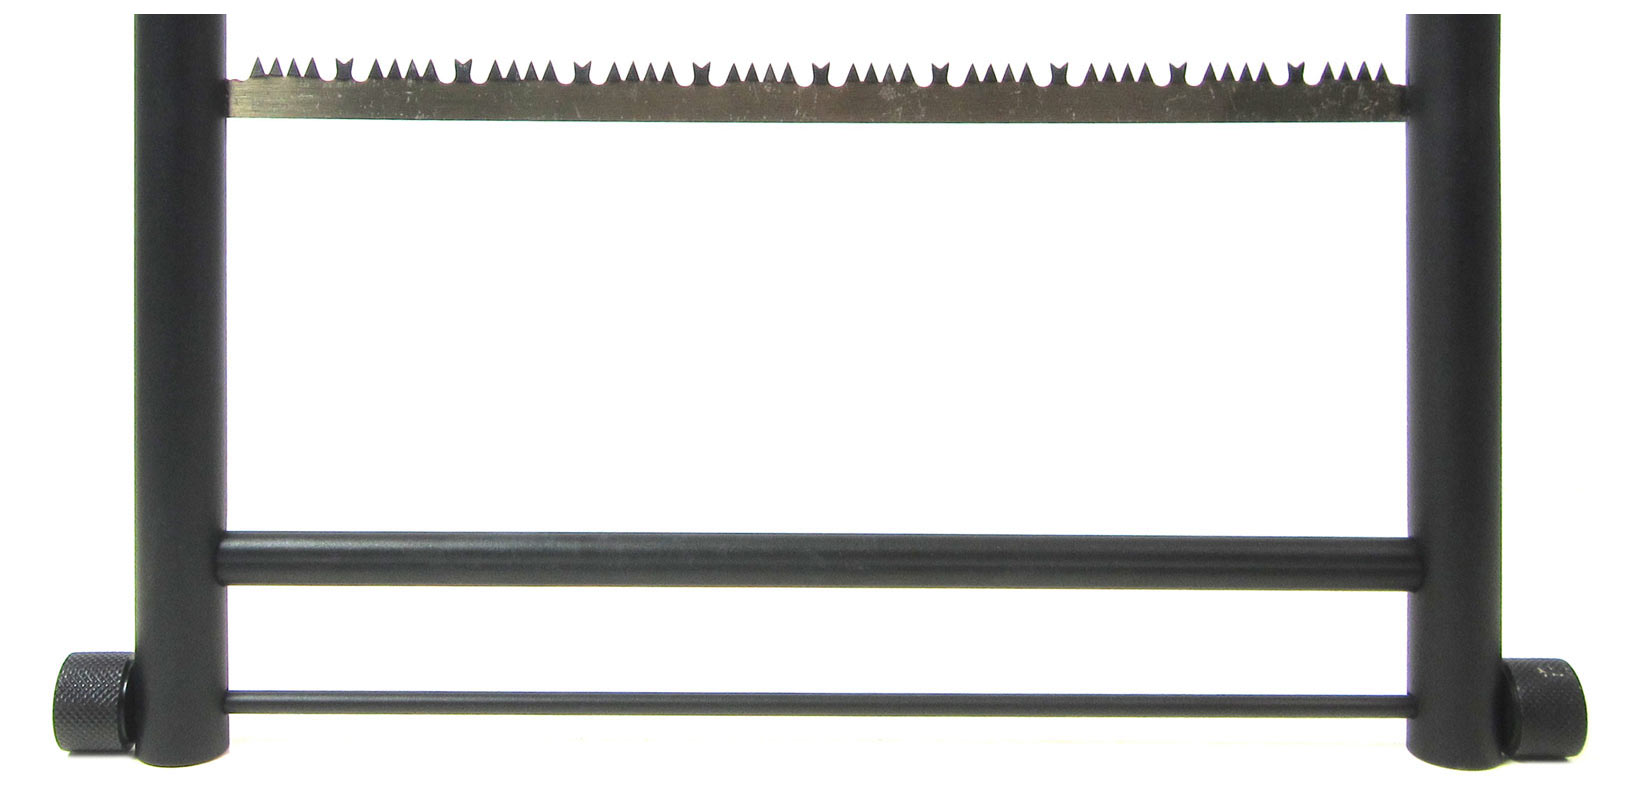 Zerlegbare Bügelsäge, leicht zu verstauen und schnell zusammengebaut.

Länge des Sägeblattes: 32 cm
Maße (zusammengebaut): ca. 41 x 18,5 cm